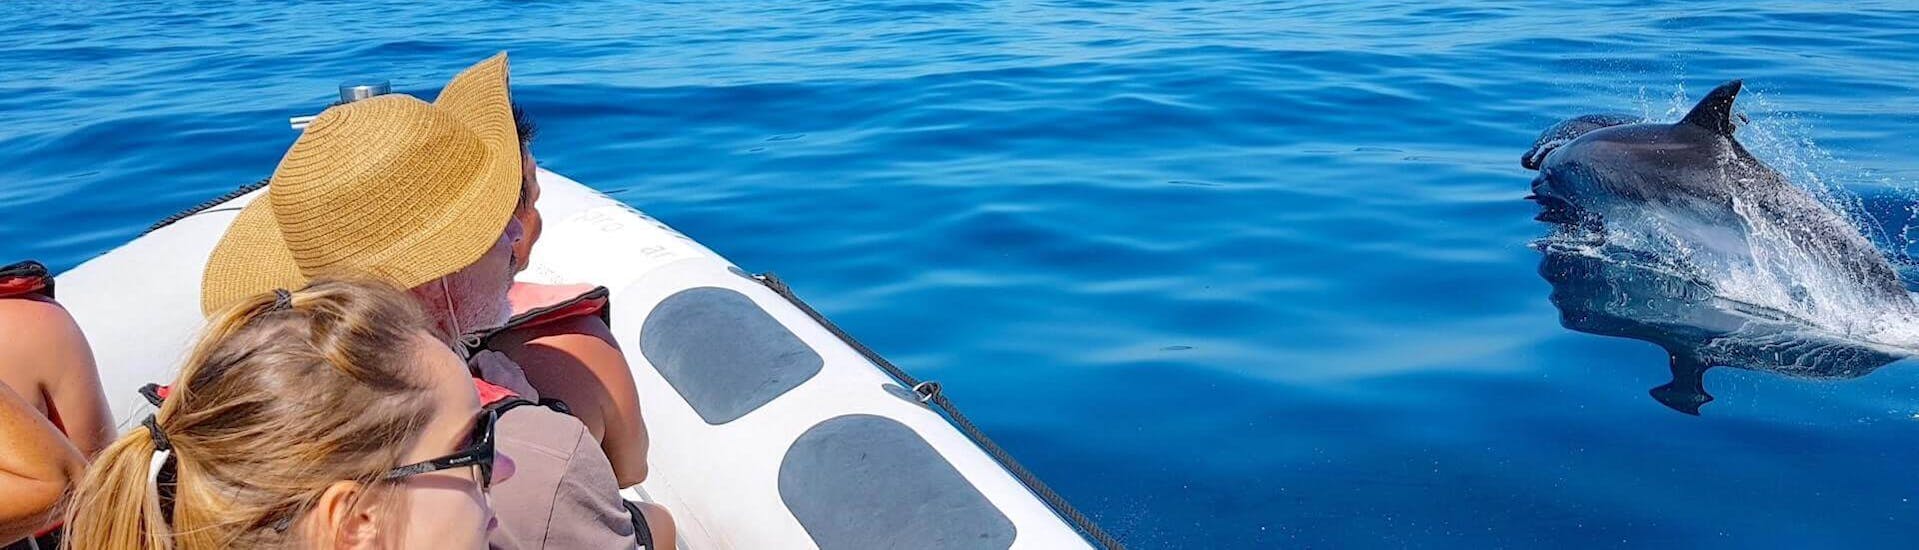 Delfine direkt neben dem Schnellboot während der Private Delfinbeobachtungstour ab Lagos.